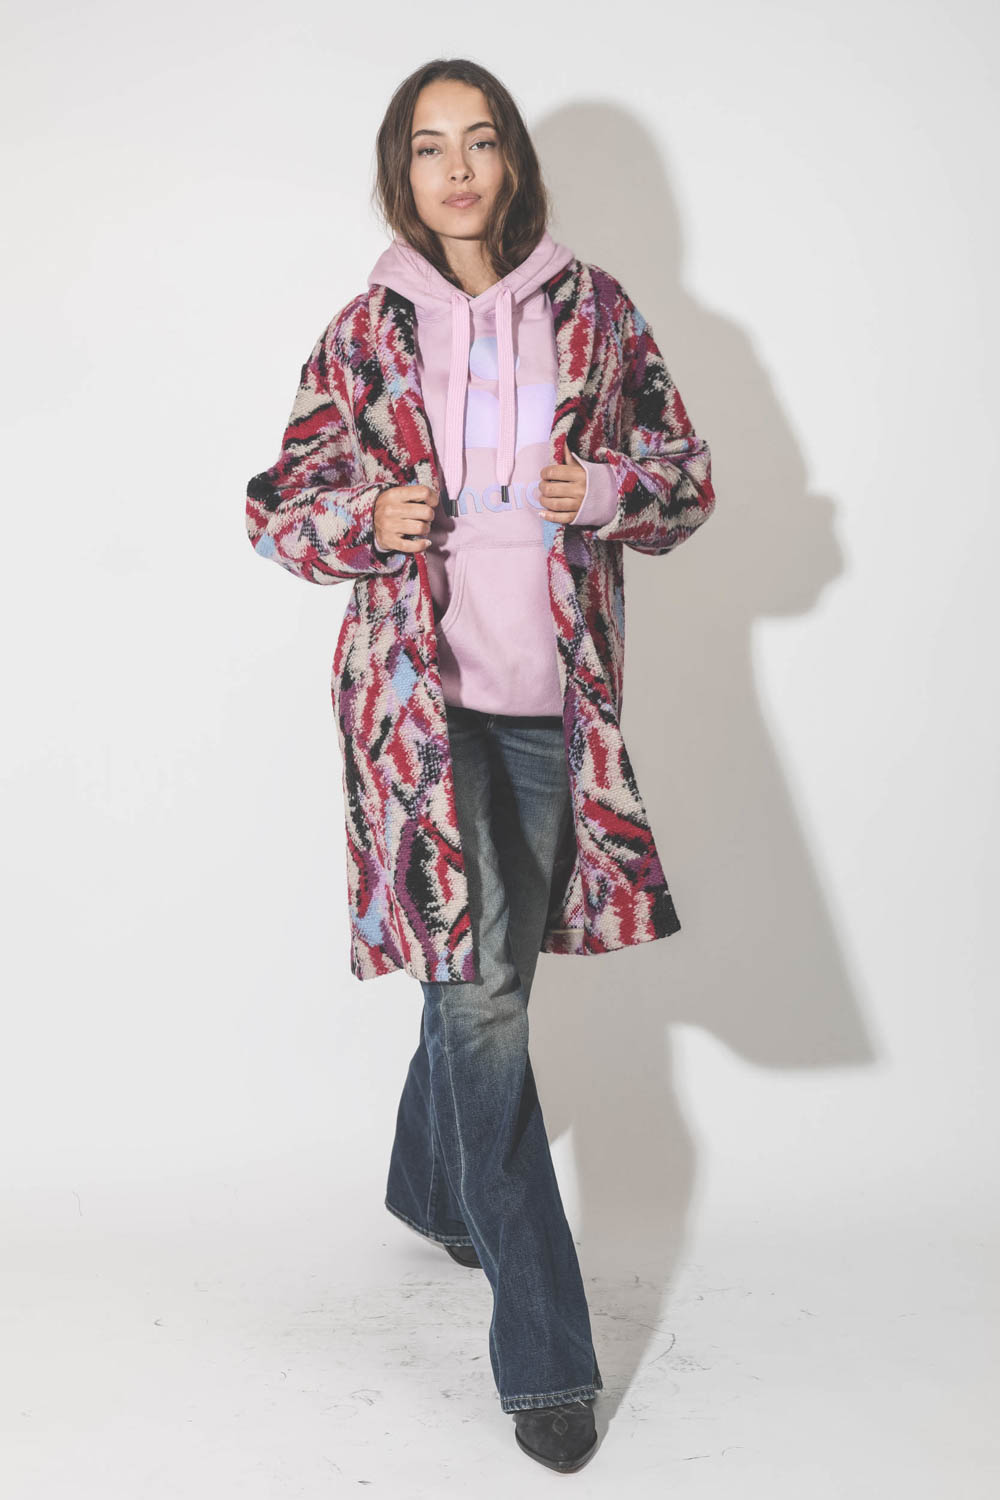 Manteau imprimé jacquard rose fond écru Sharon Marant Etoile. Porté avec un sweat-shirt rose à capuche Marant.